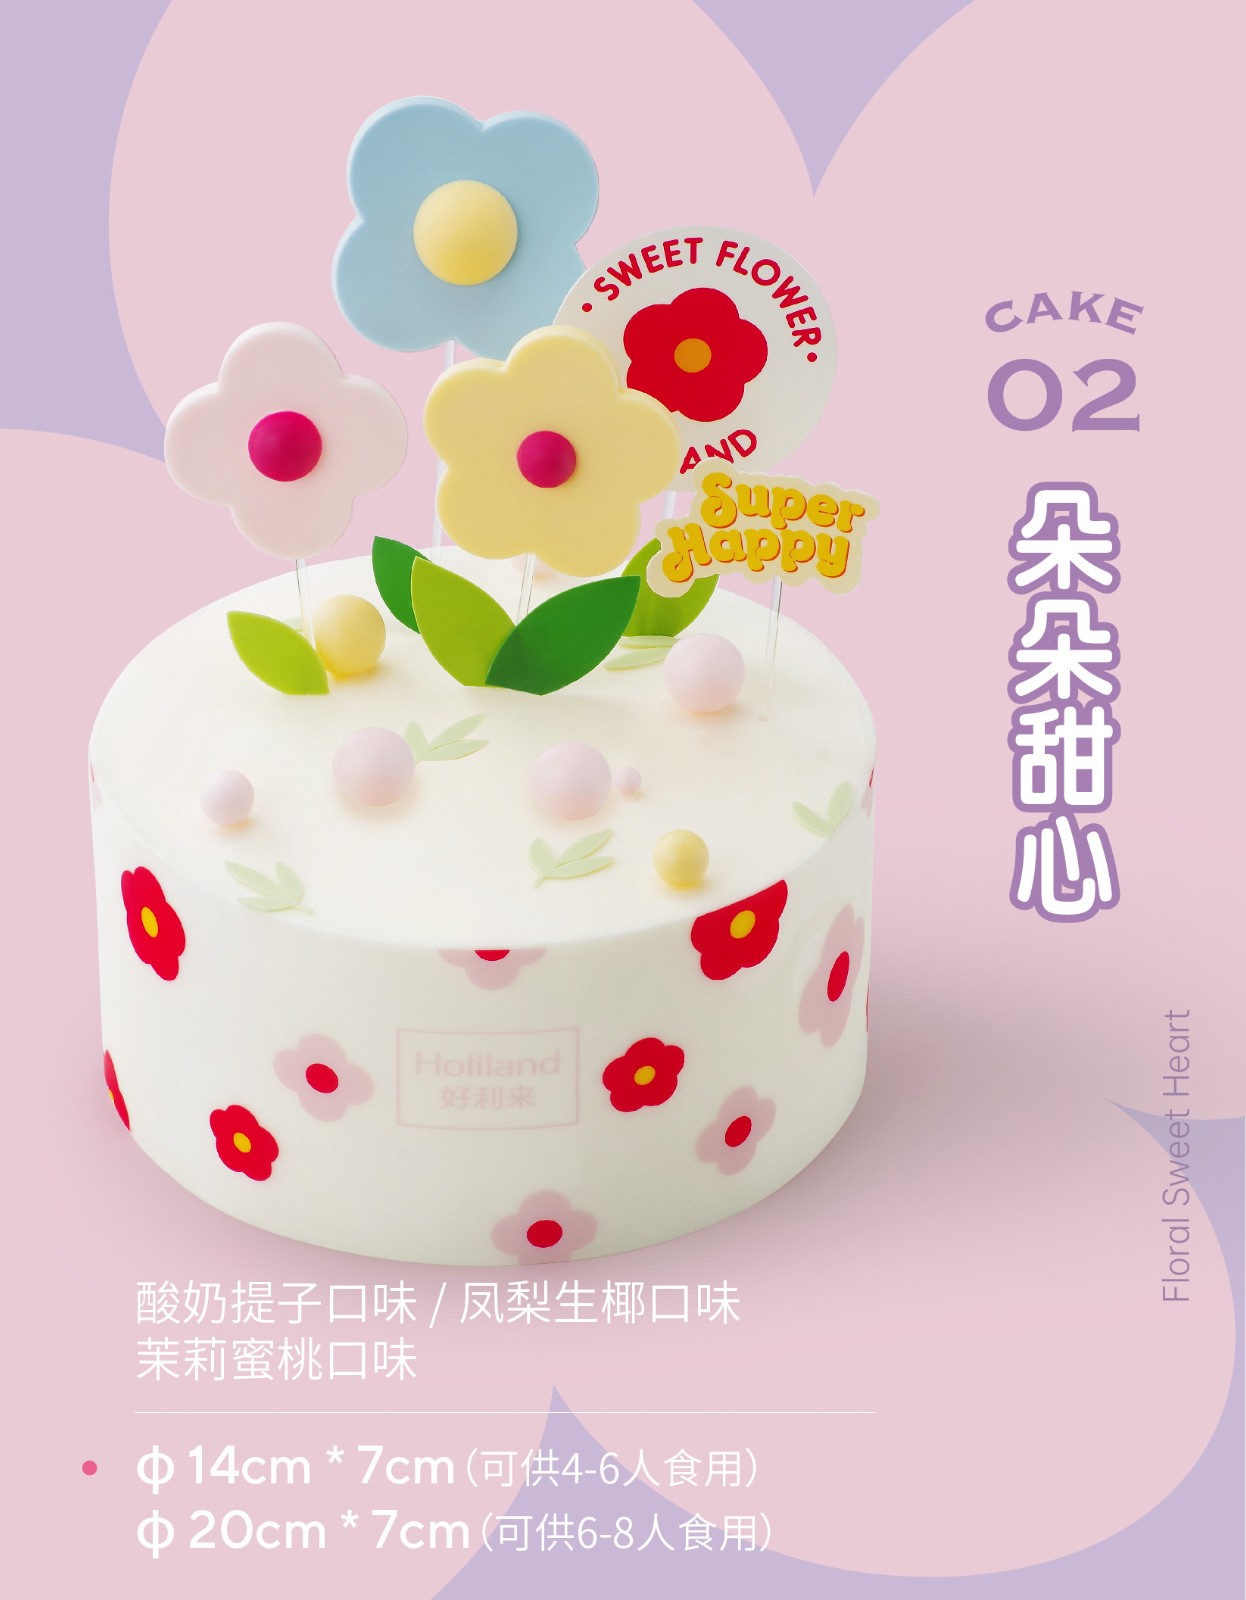 樂芙尼手工蛋糕 松江南京 甜點控來看啦~~ - 美食板 | Dcard